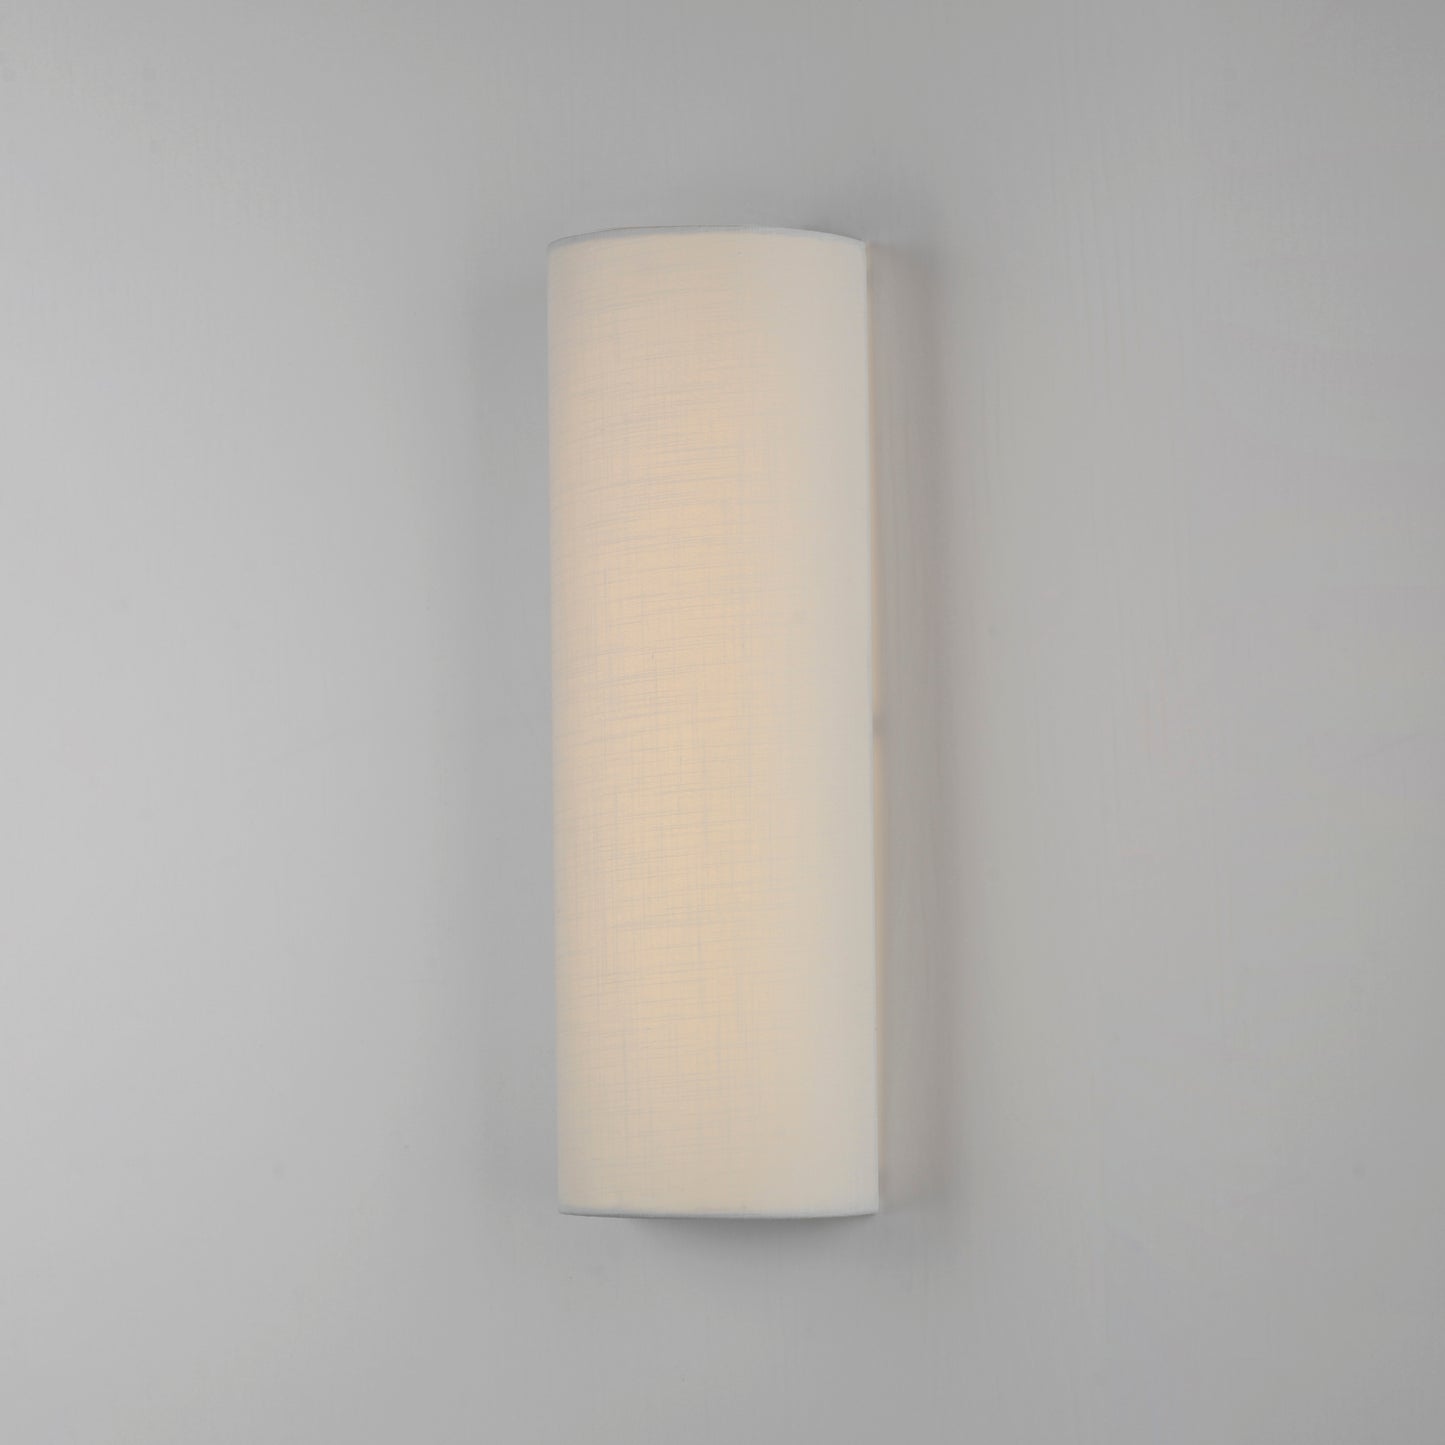 10238WL - 1 Light Prime 6" Wall Sconce - White Linen